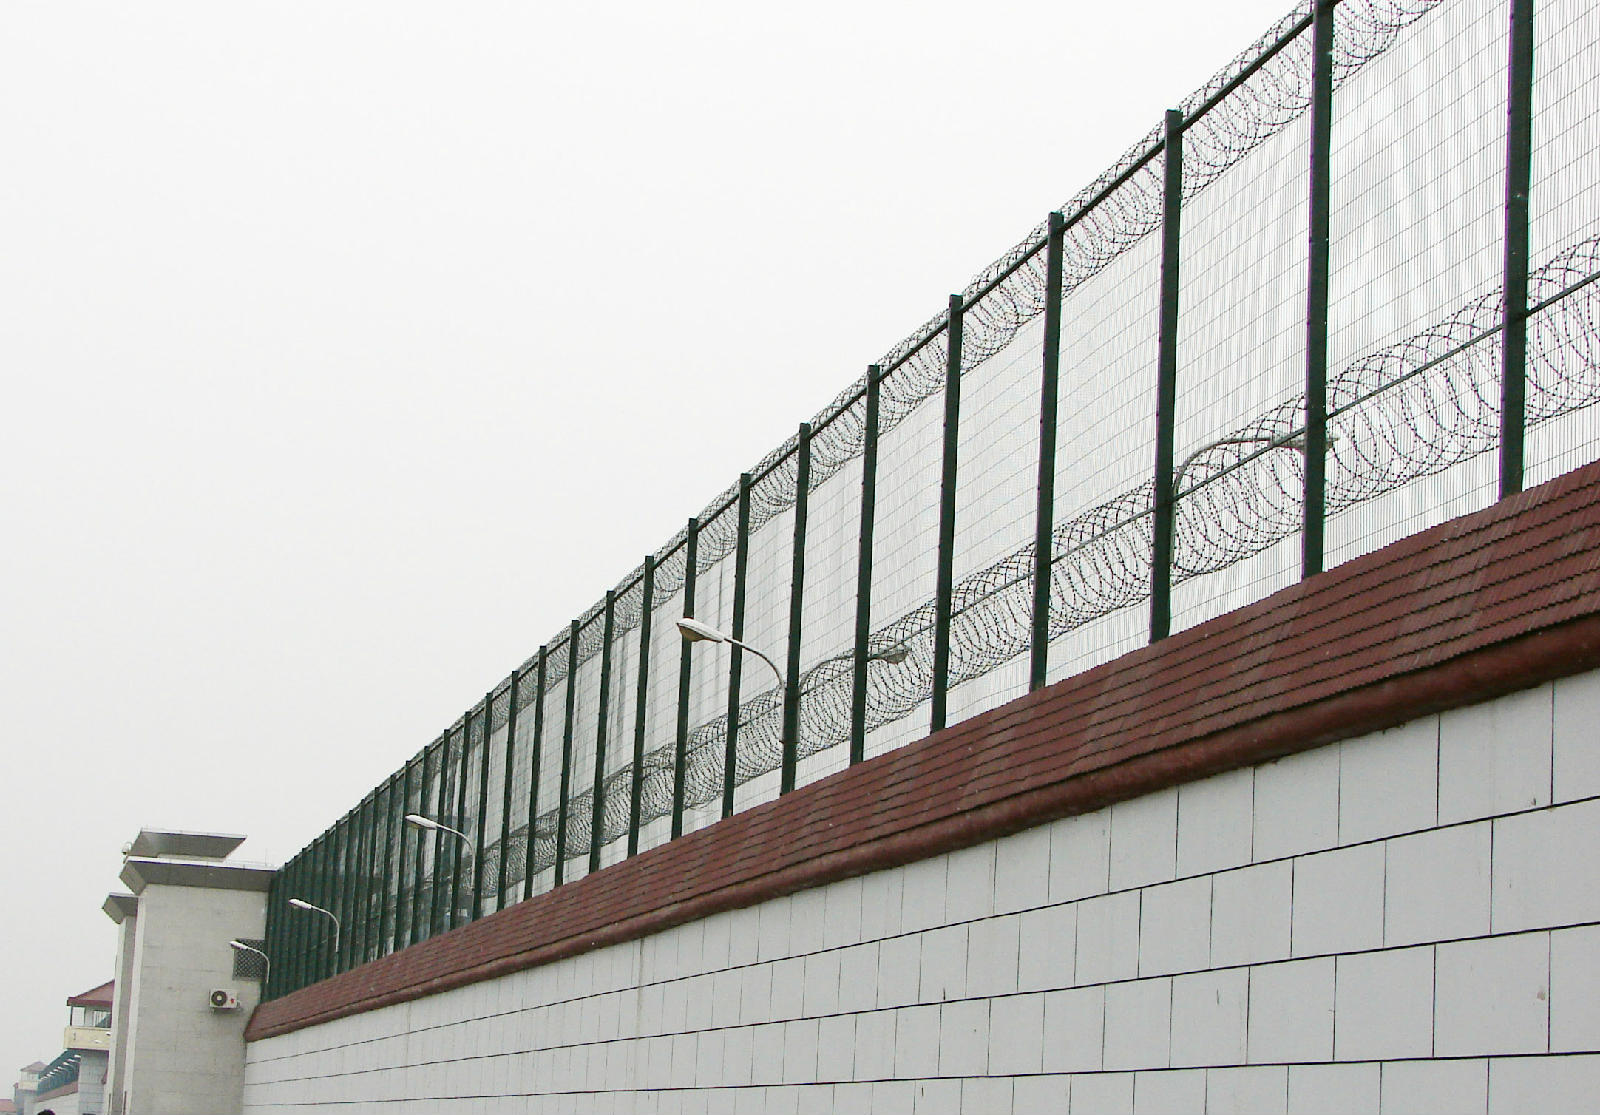 监狱信号屏蔽器案例-河北省定州监狱信号屏蔽系统